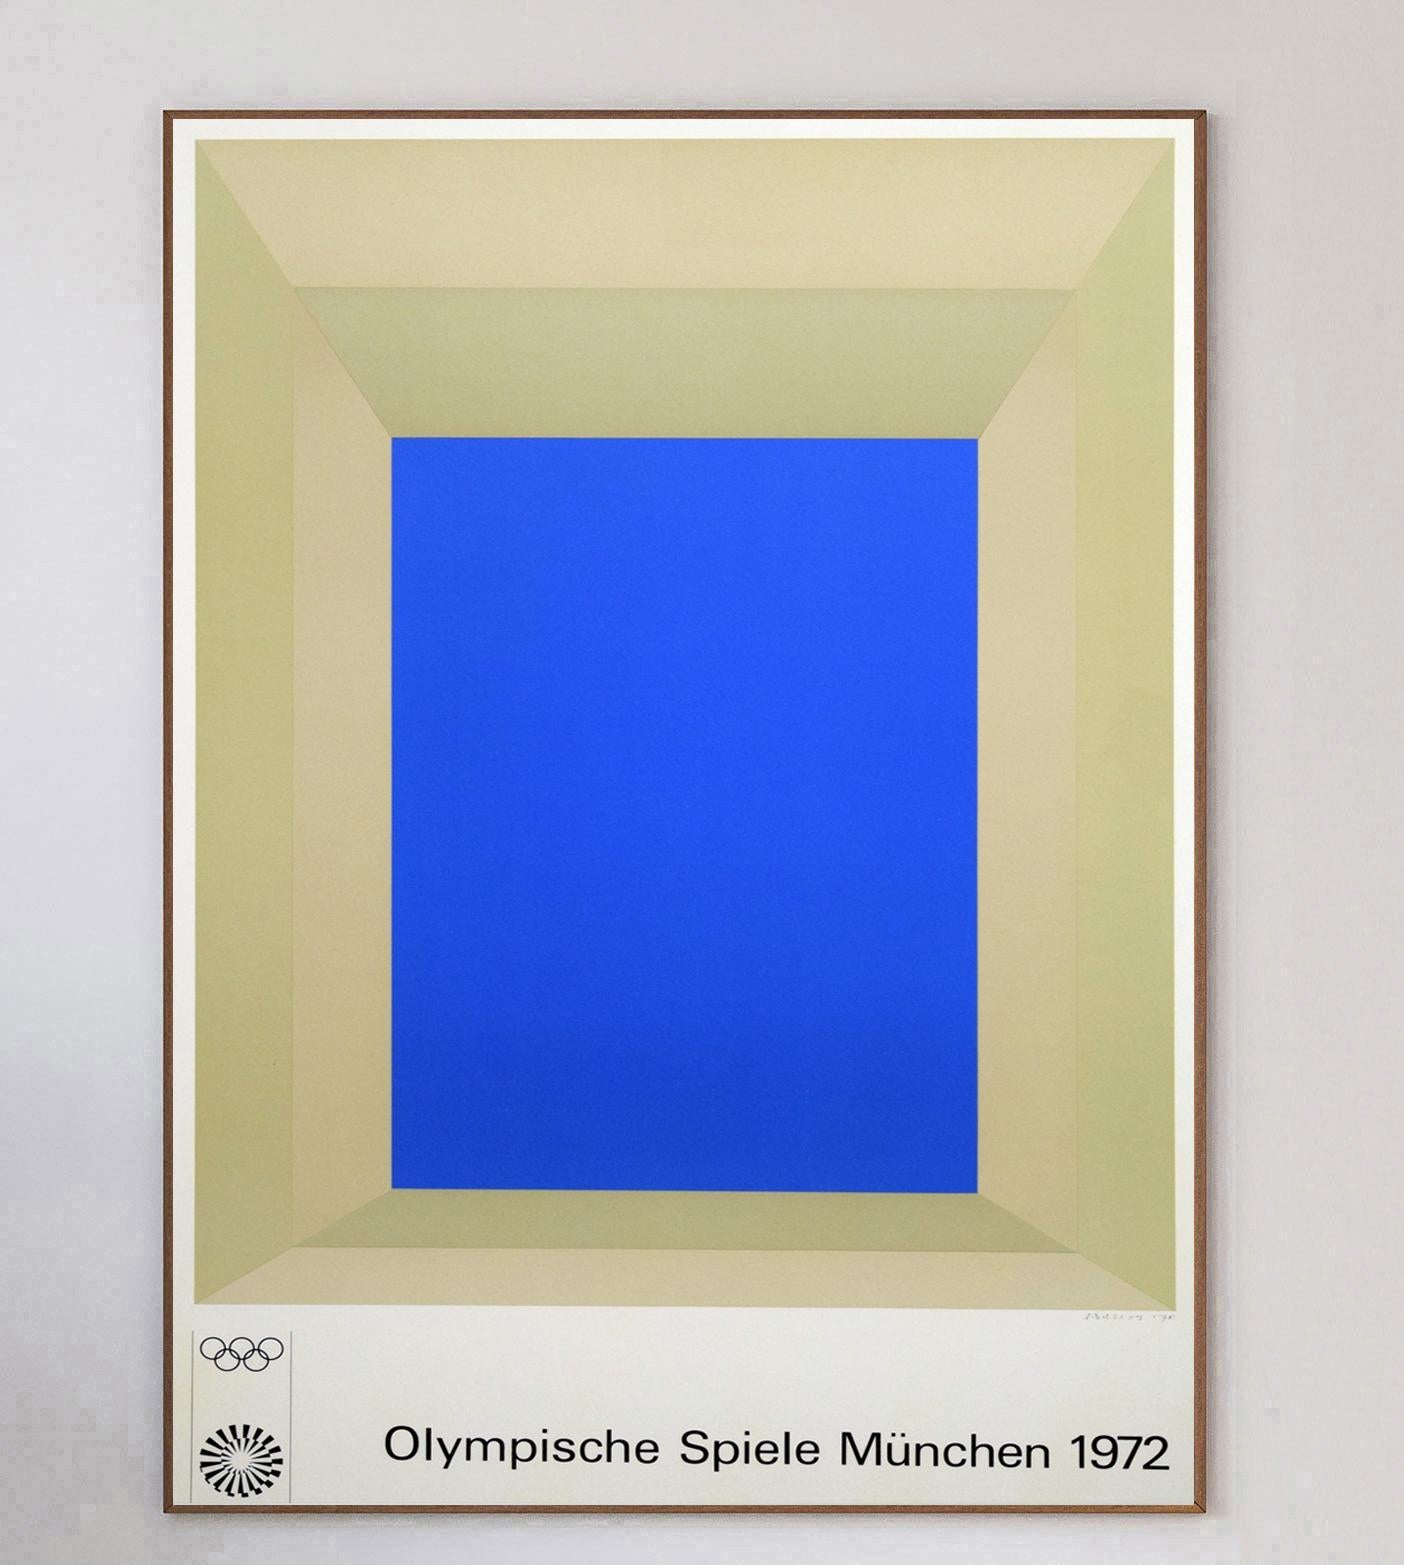 Le peintre allemand Josef Albers a été l'un des 29 artistes chargés de réaliser des affiches pour les Jeux olympiques de Munich en 1972. À l'approche des Jeux de 1972, le comité d'organisation a décidé de commander une série d'affiches d'artistes